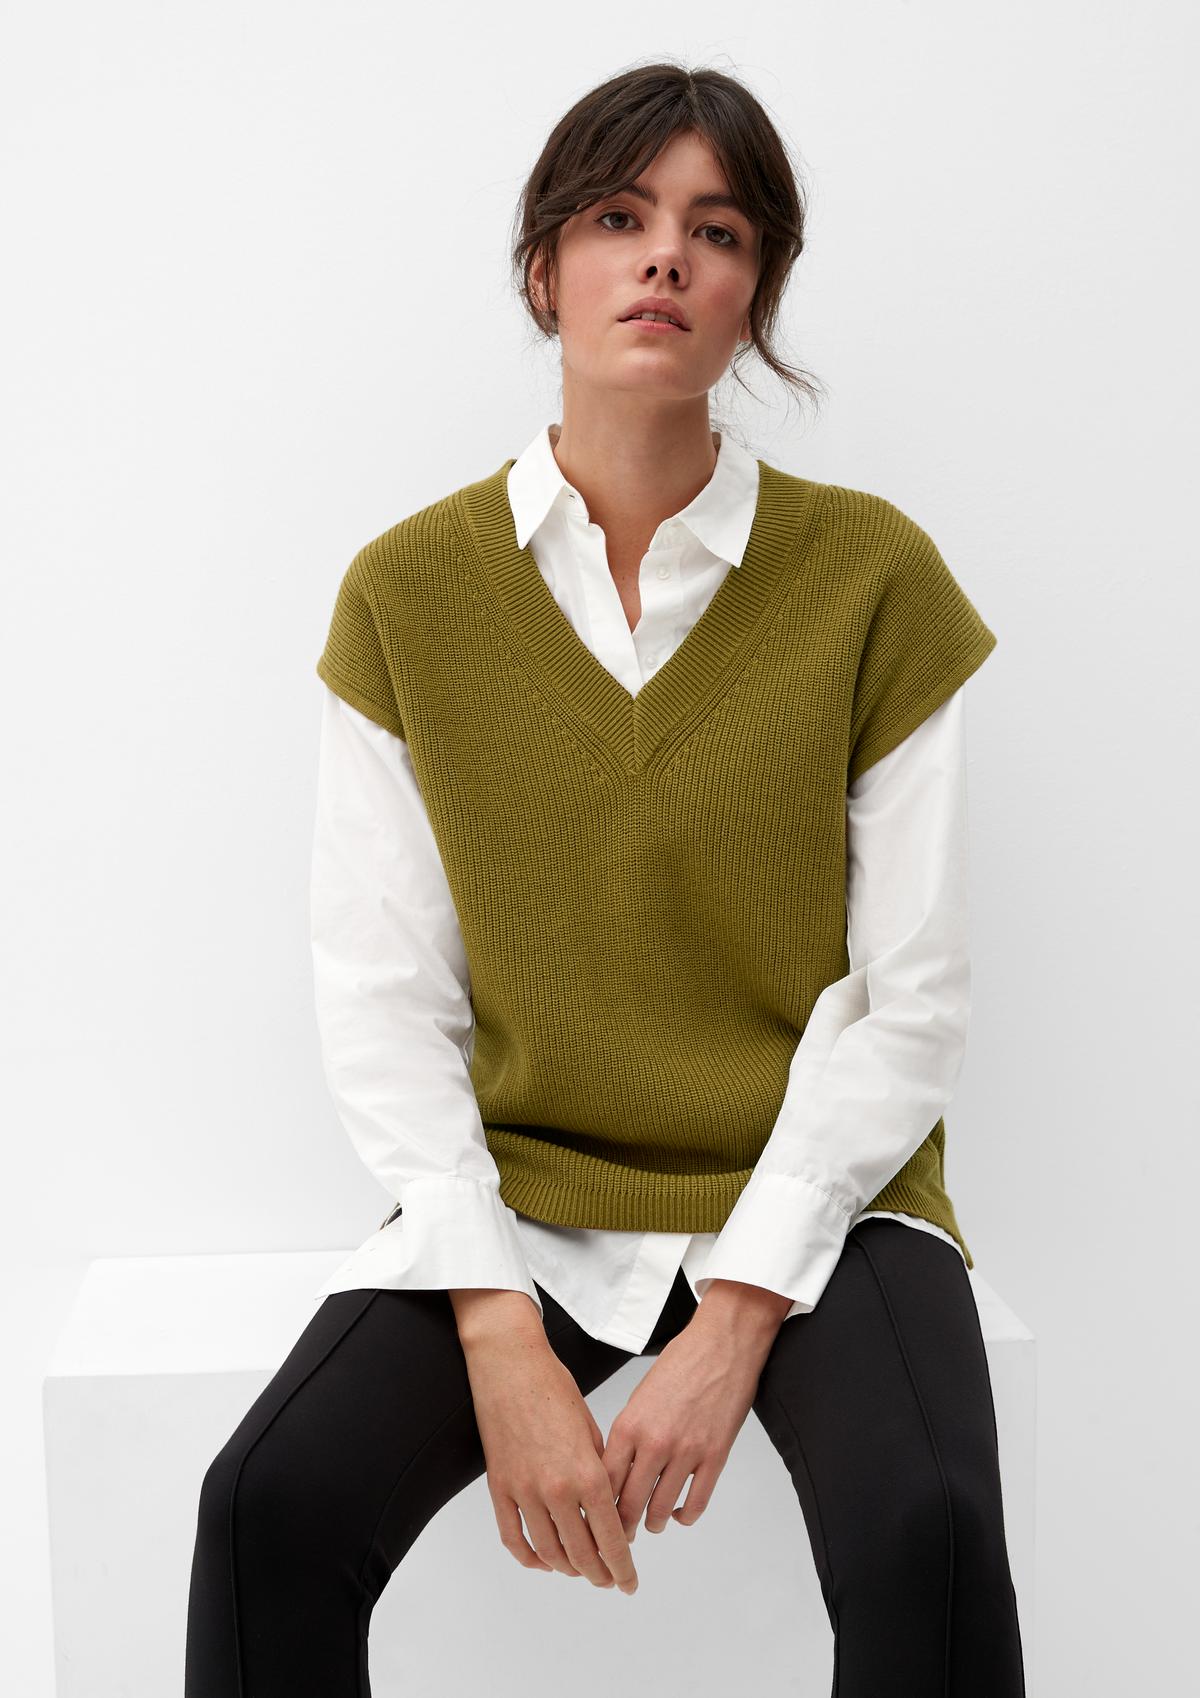 s.Oliver V-neck sleeveless knitted jumper